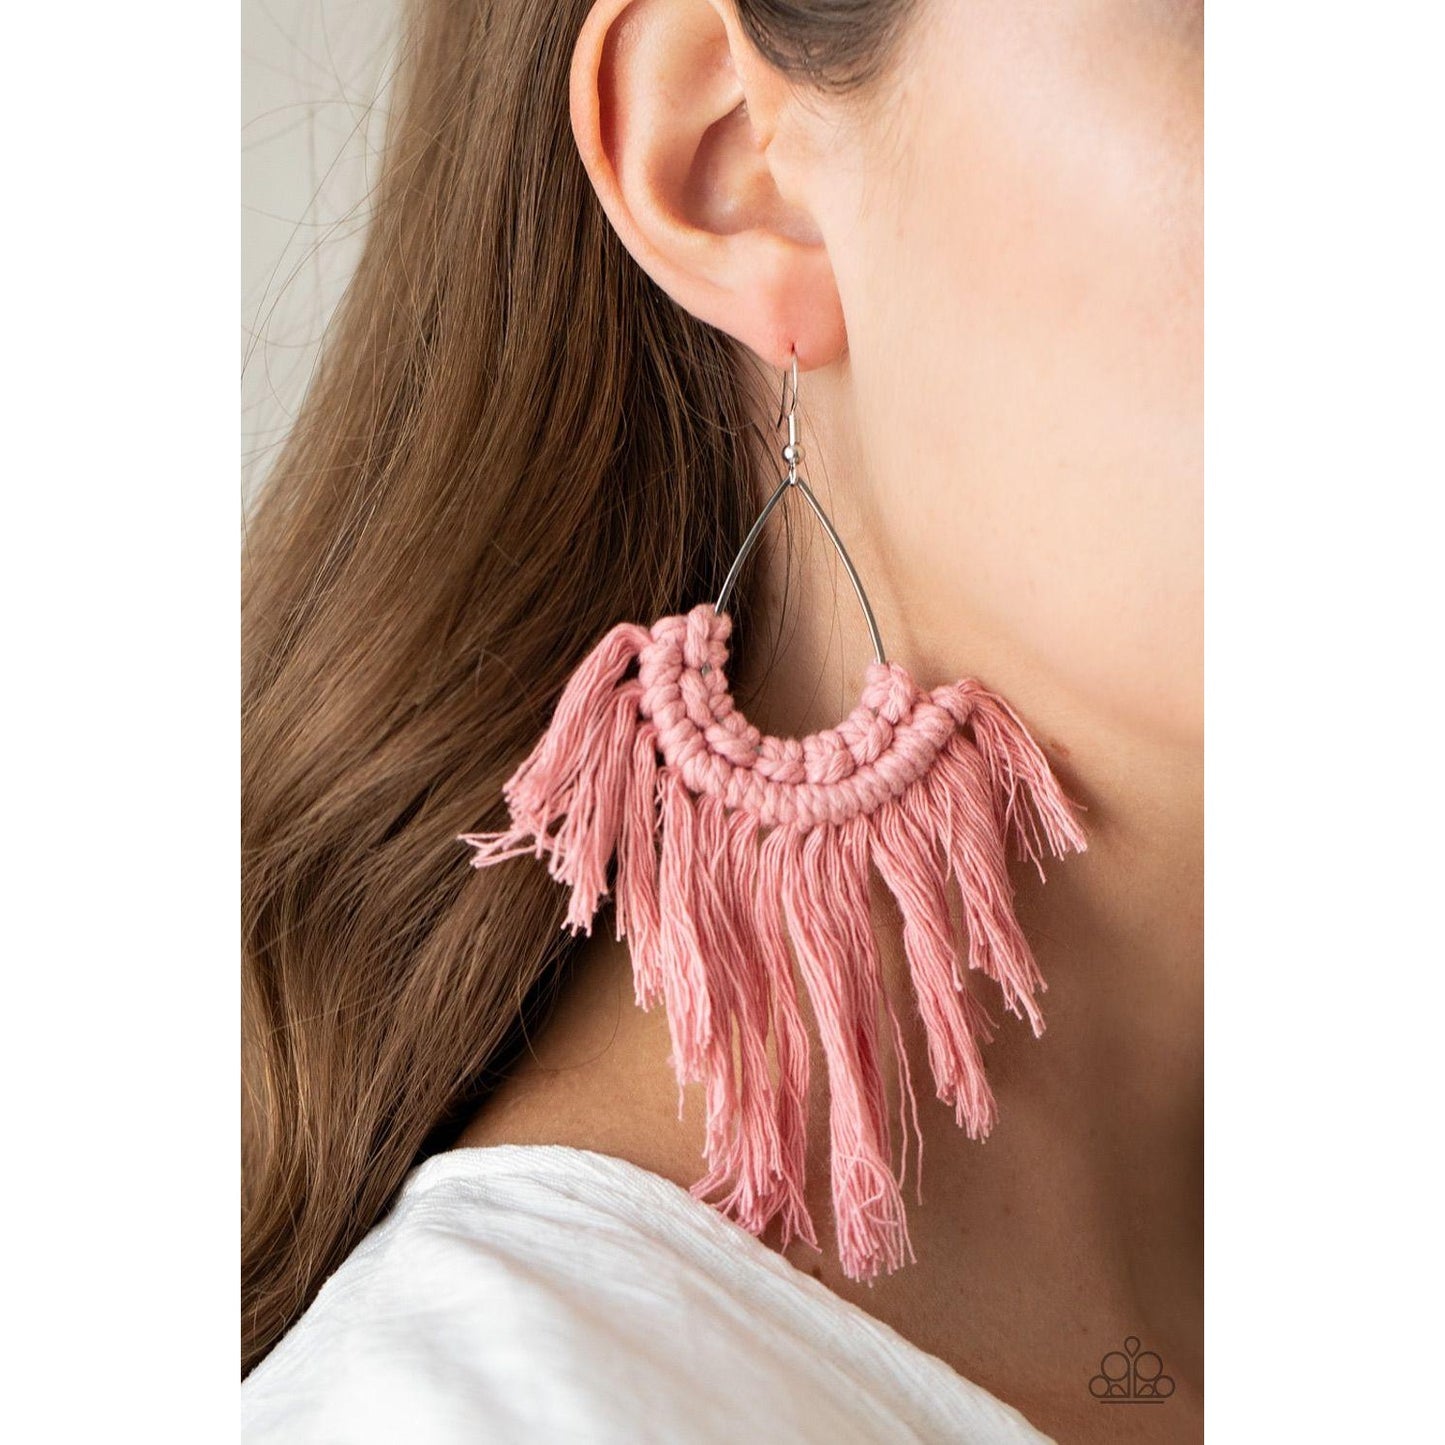 Wanna Piece Of MACRAME? – Pink Earrings